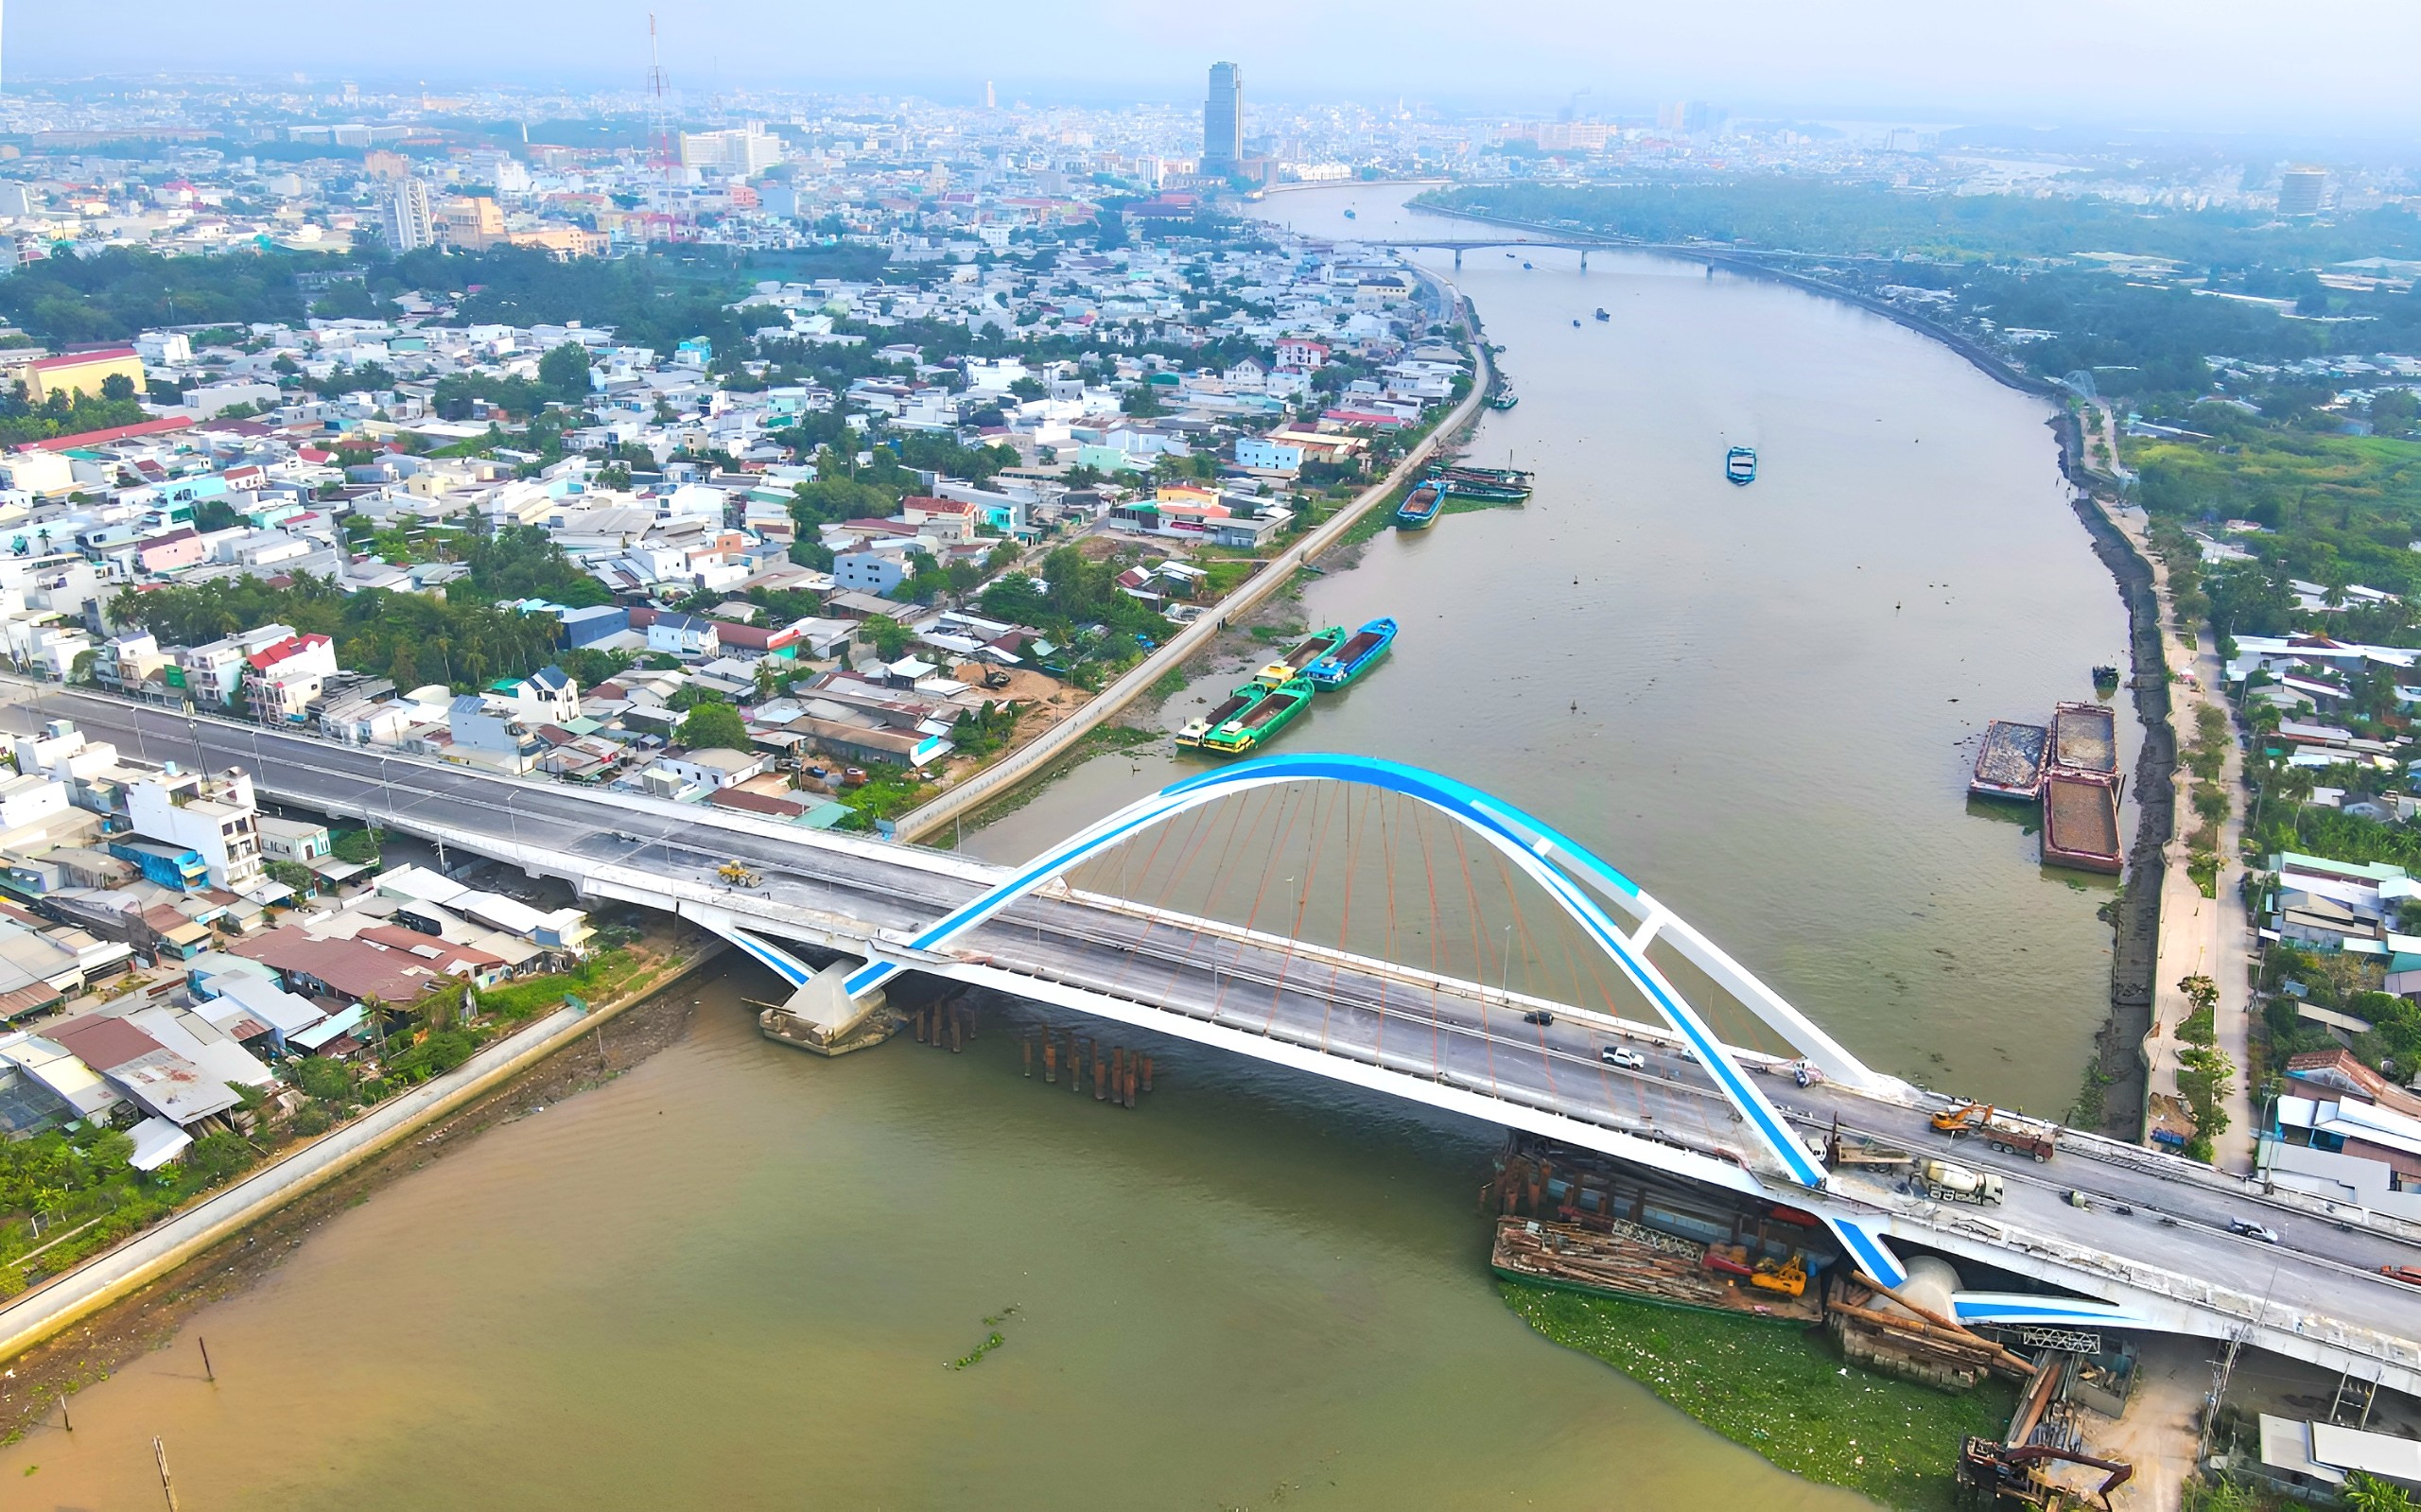 Cầu Trần Hoàng Na có chiều dài toàn tuyến 820m, trong đó phần cầu chính dài gần 600m, bắc qua sông Cần Thơ, nối trung tâm TP (thuộc quận Ninh Kiều) với các khu đô thị phía Nam và tuyến quốc lộ 1A (thuộc quận Cái Răng).